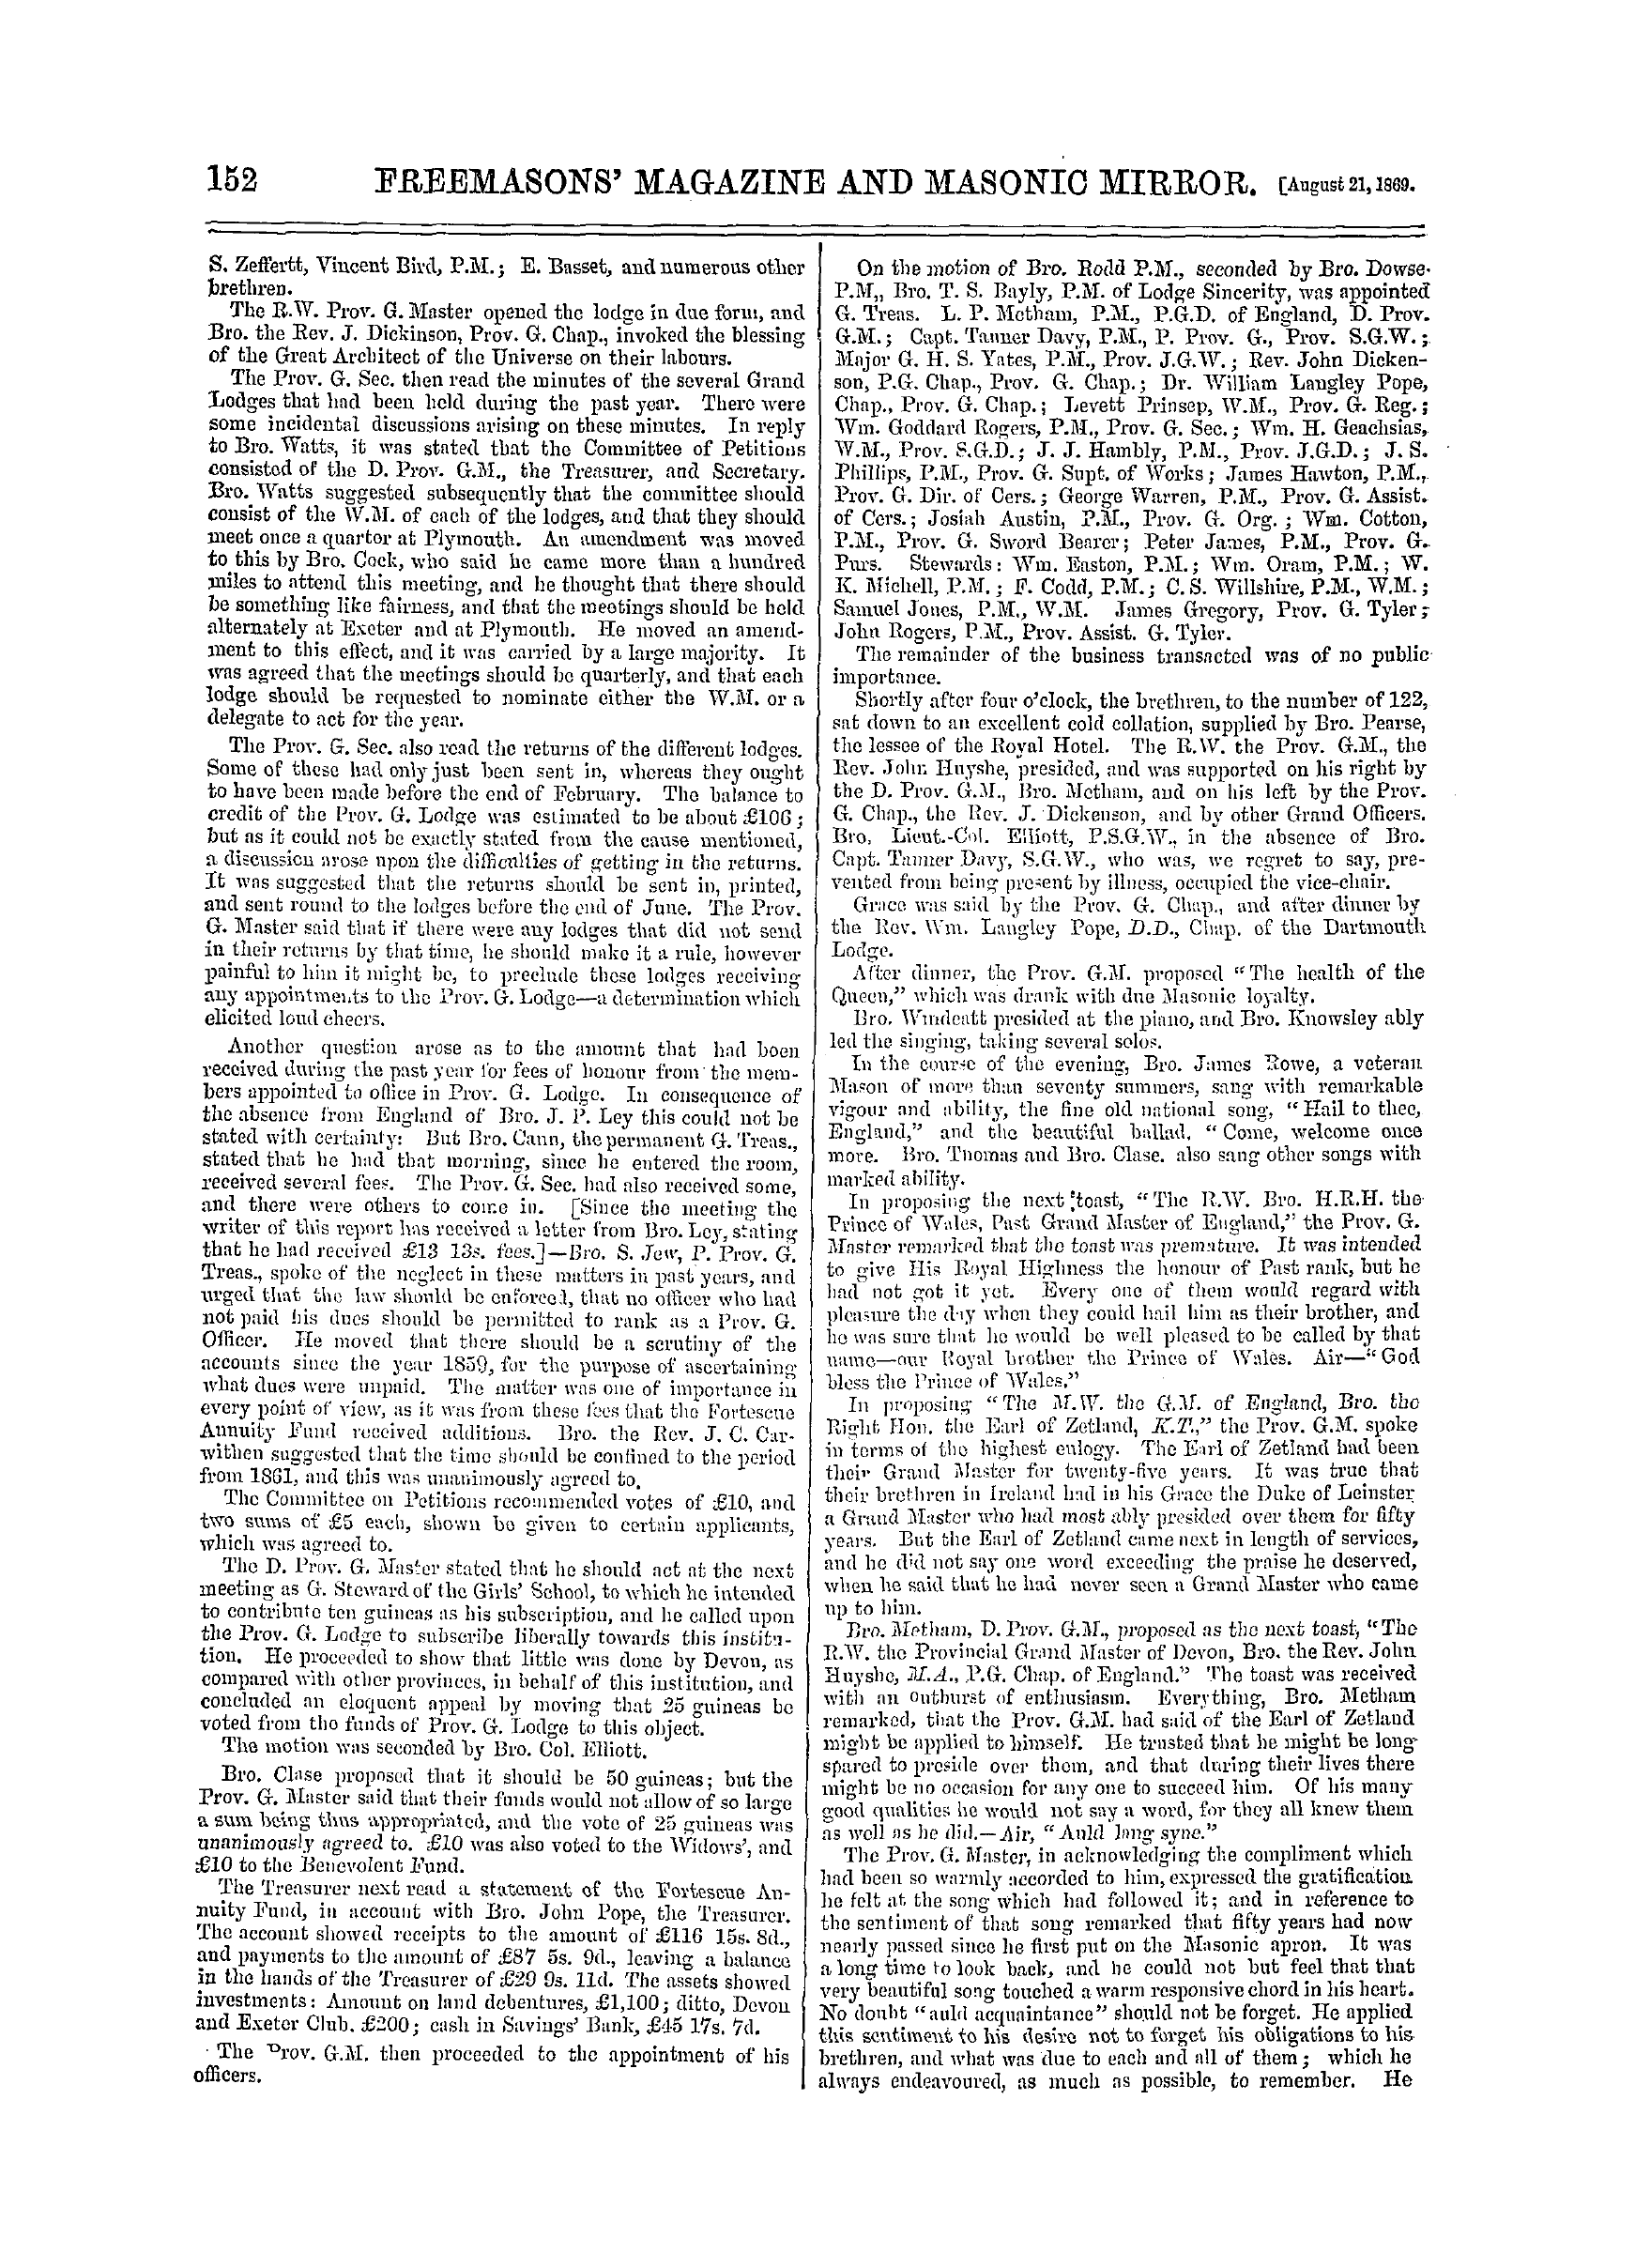 The Freemasons' Monthly Magazine: 1869-08-21: 12